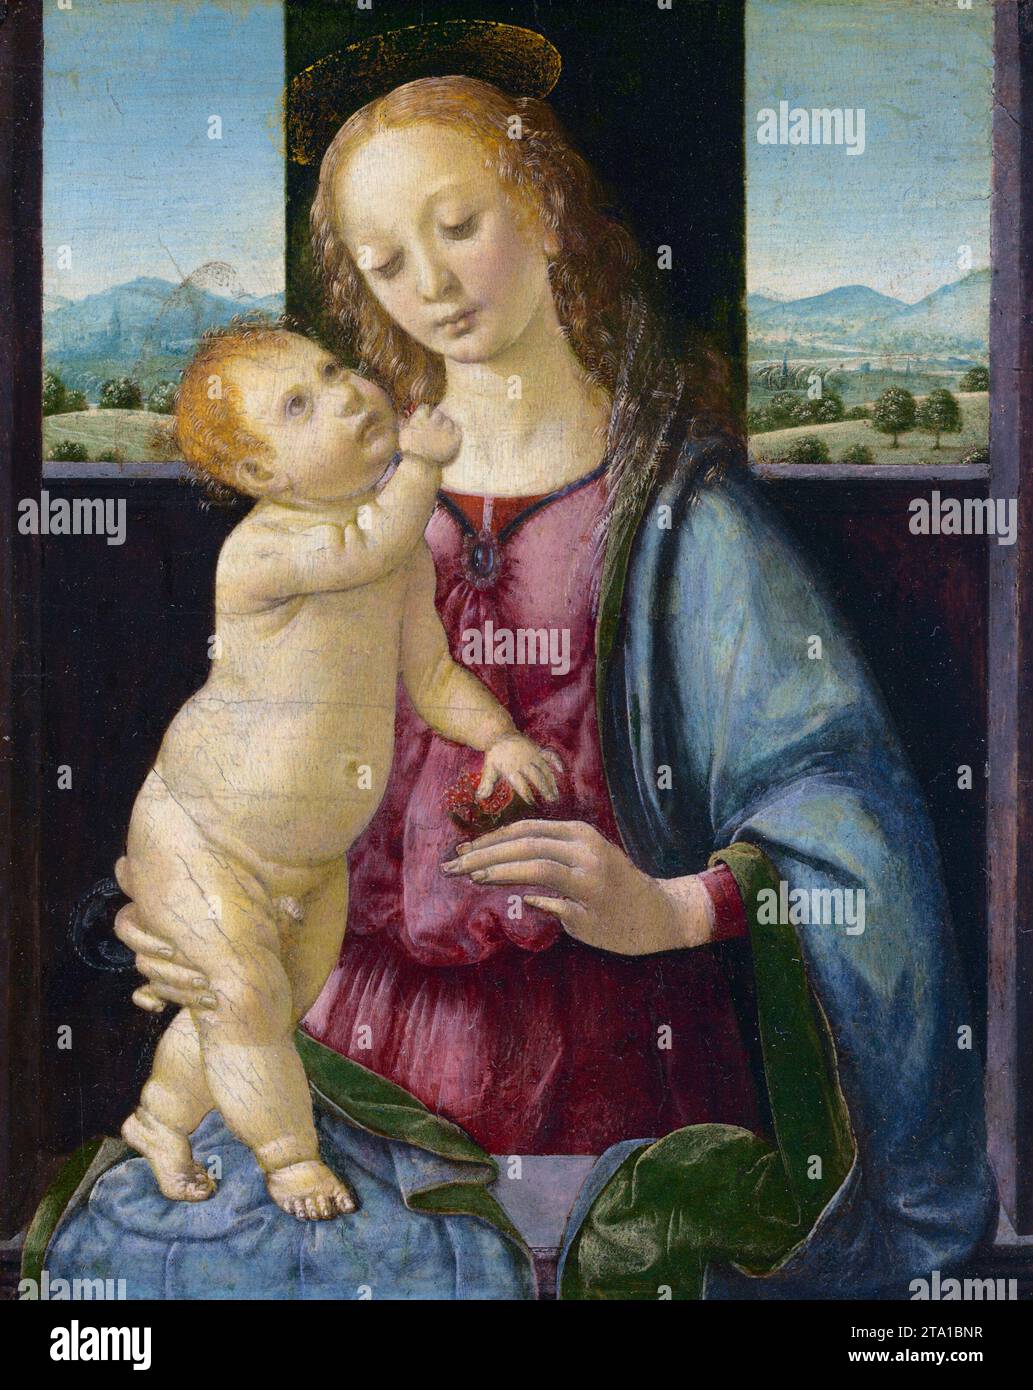 Madone et enfant avec une grenade, 1478-1480, Vierge Marie, Christ enfant, art religieux de Lorenzo di Credi (1459-1537) Banque D'Images